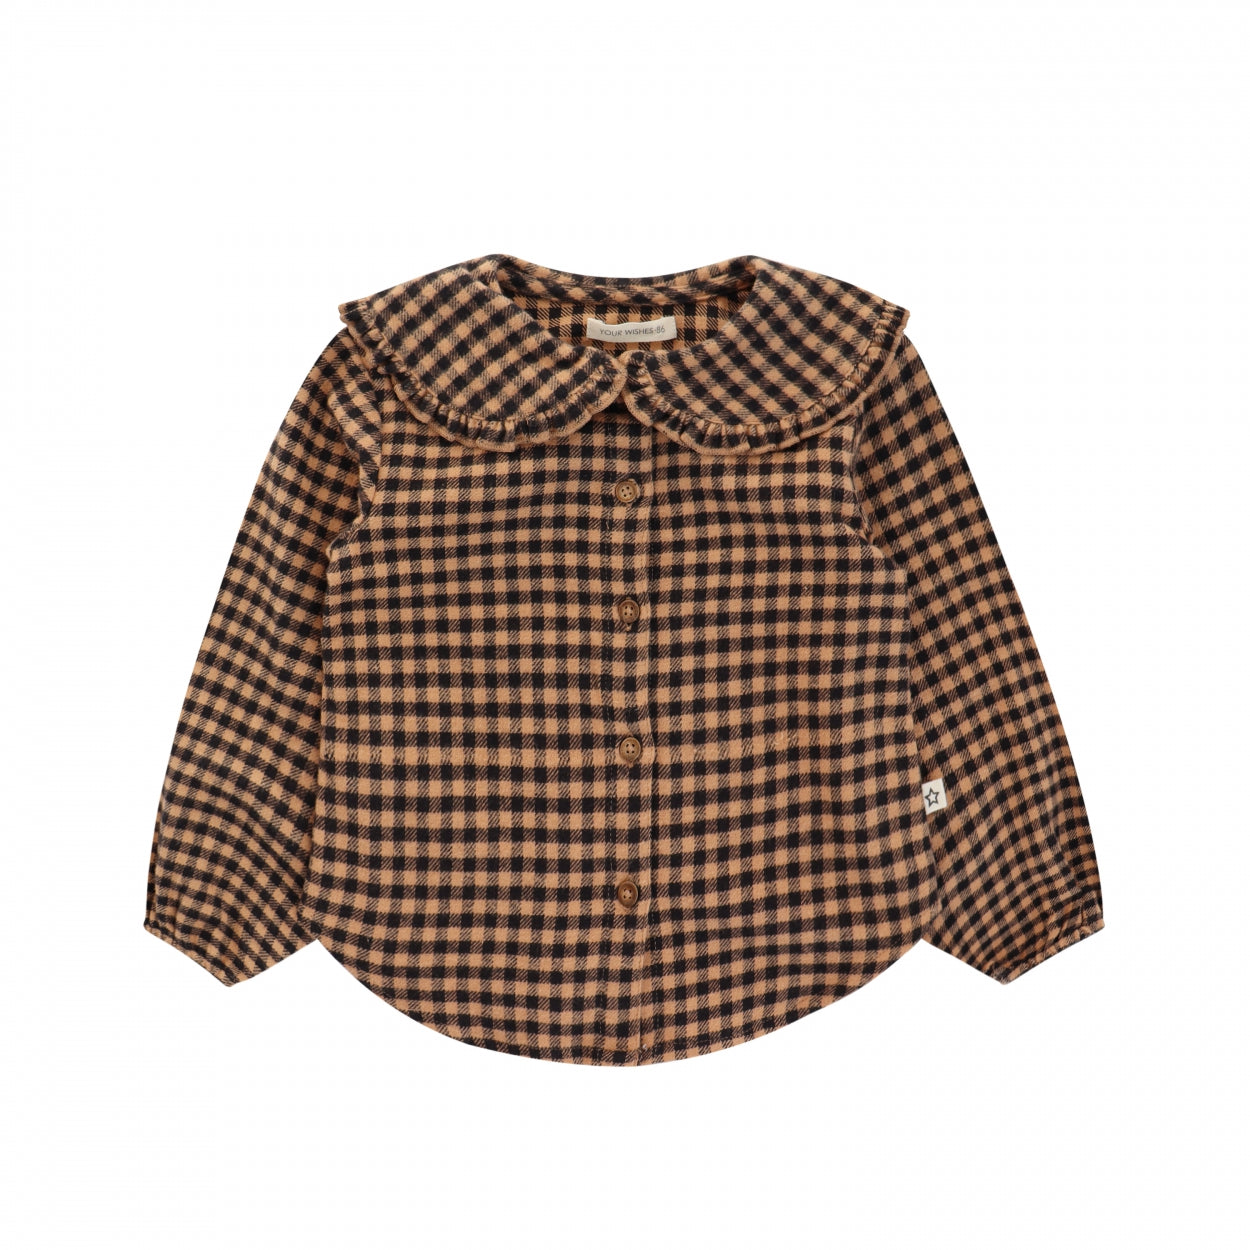 Meisjes Shirt lange mouw Saxon | Gwen van Your Wishes in de kleur Dark Brown in maat 134-140.